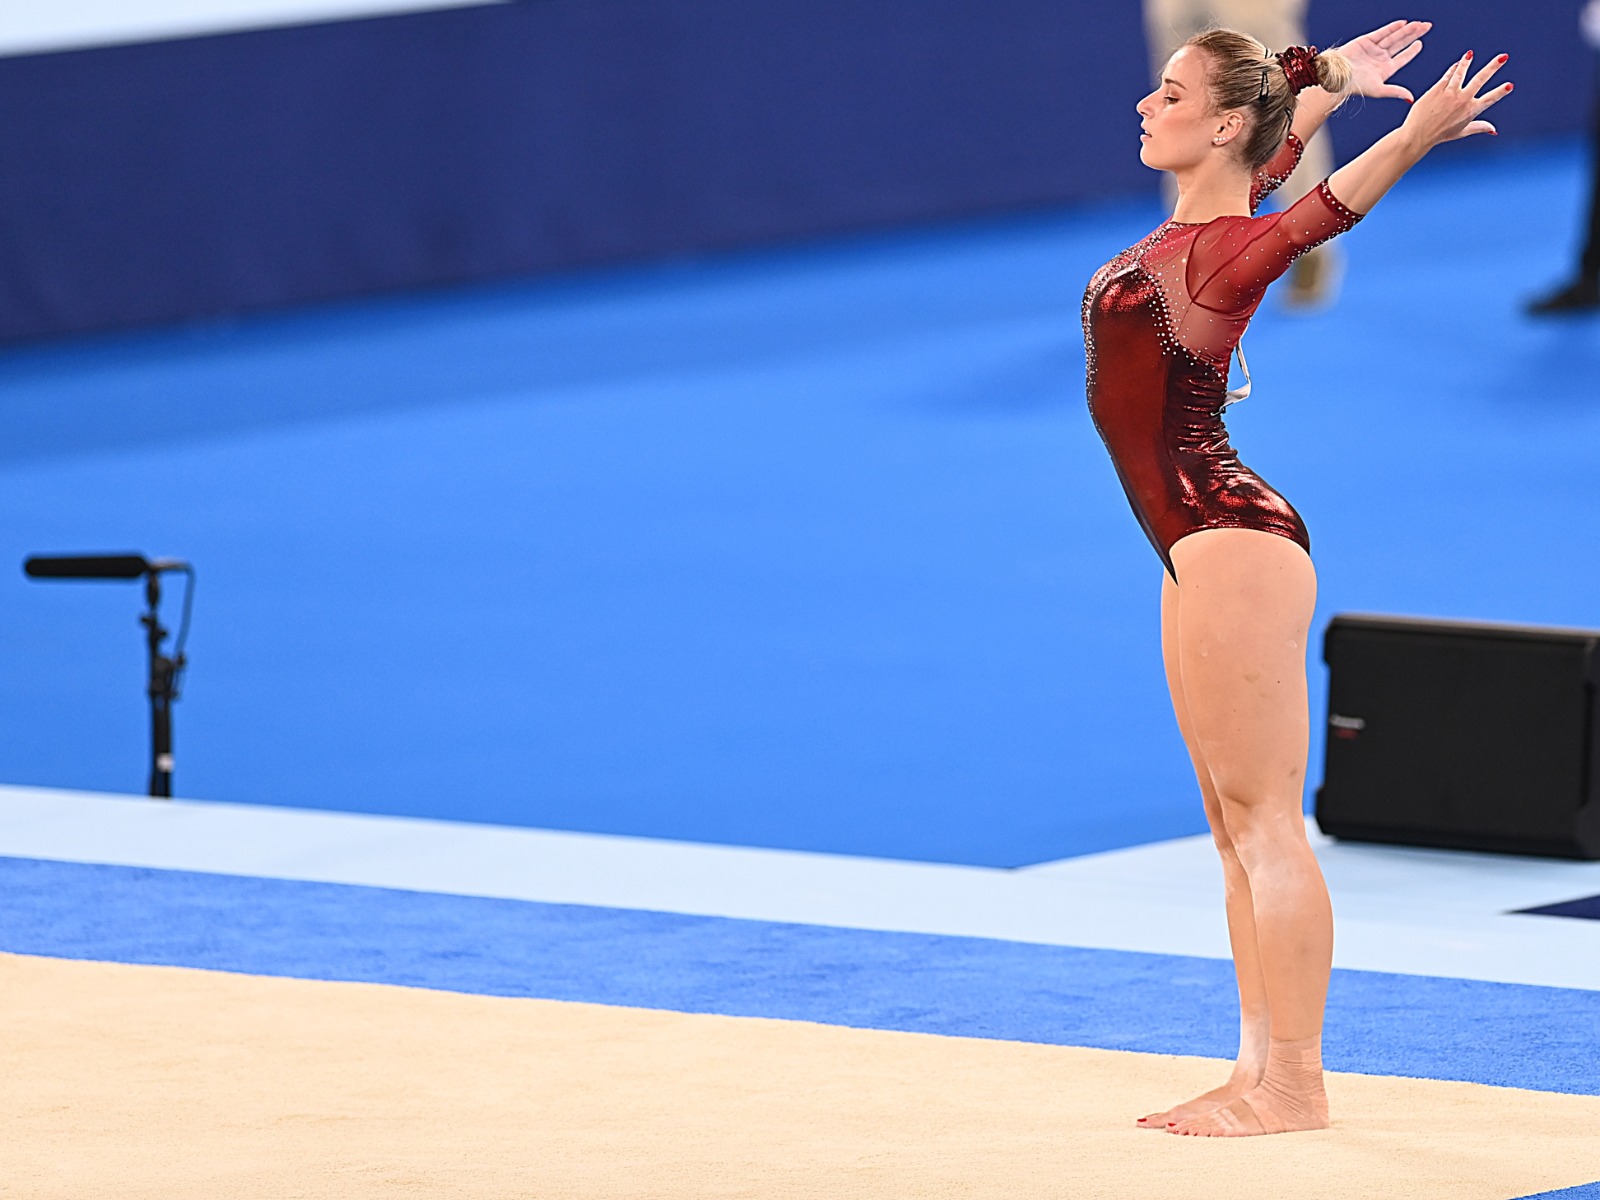 Ana Đerek završila svoj nastup na Olimpijskim igrama; hrvatska gimnastičarka ipak nije izborila nastup u finalu po spravama